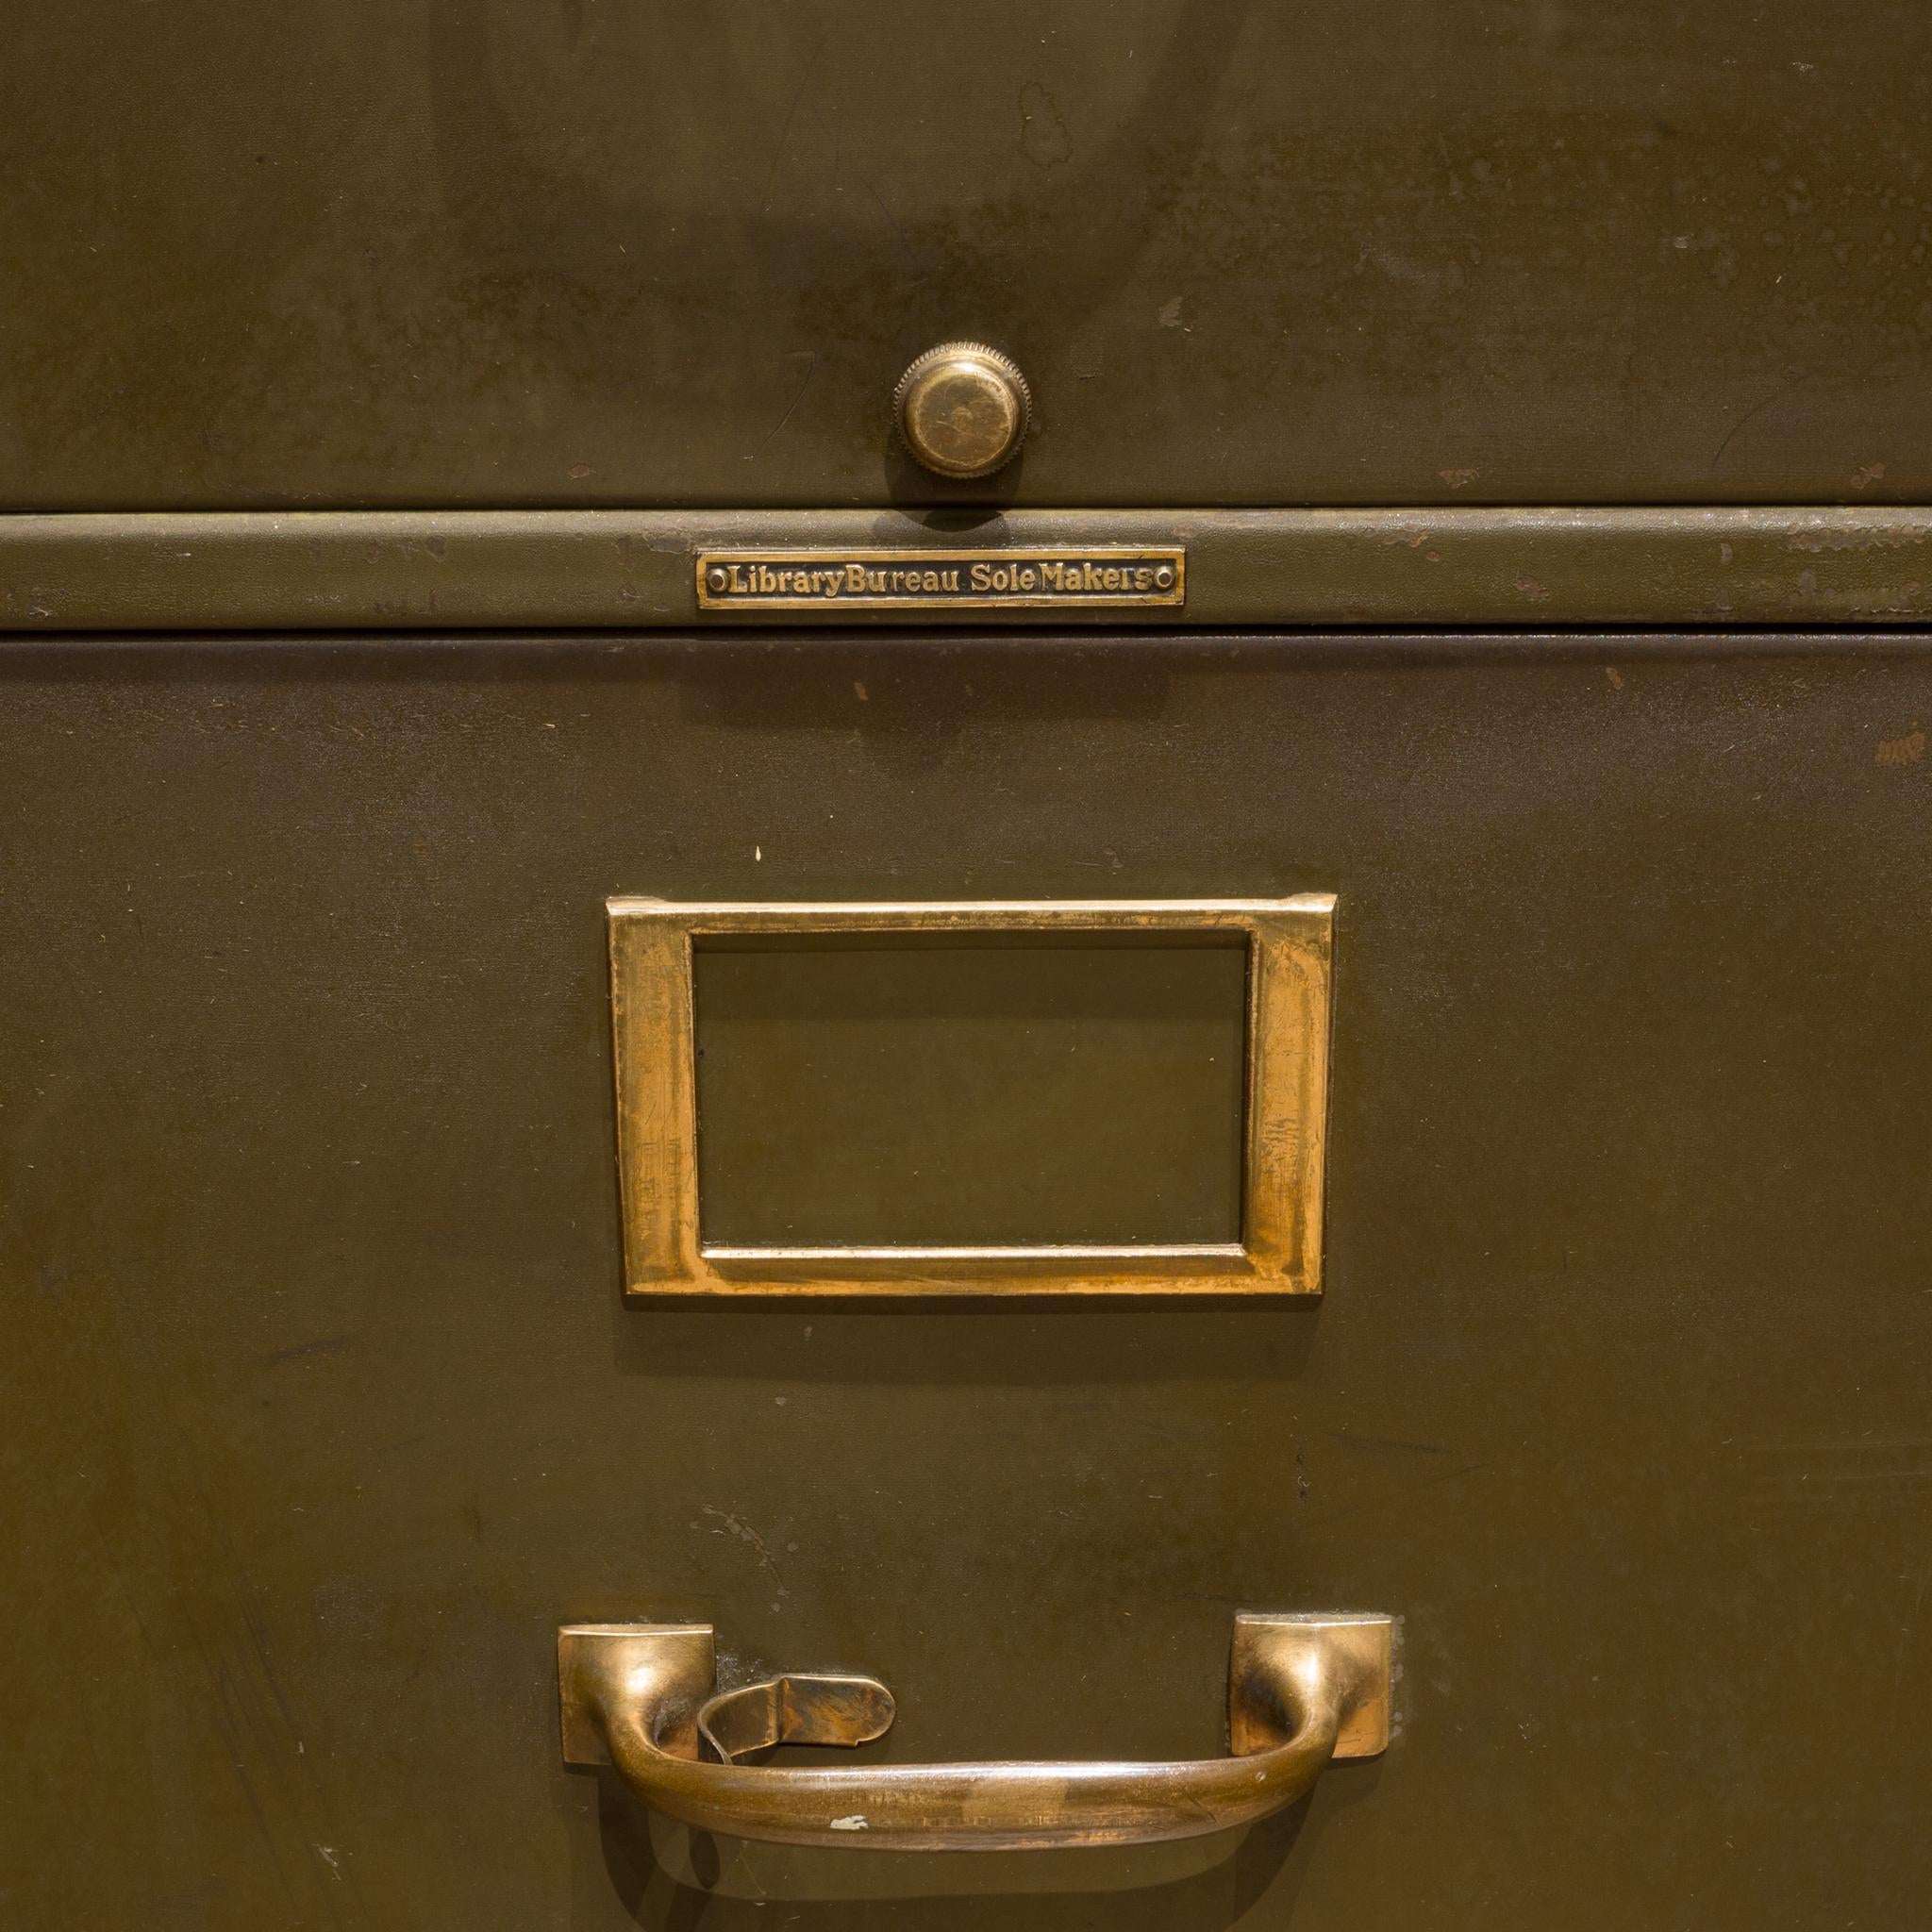 vintage green filing cabinet